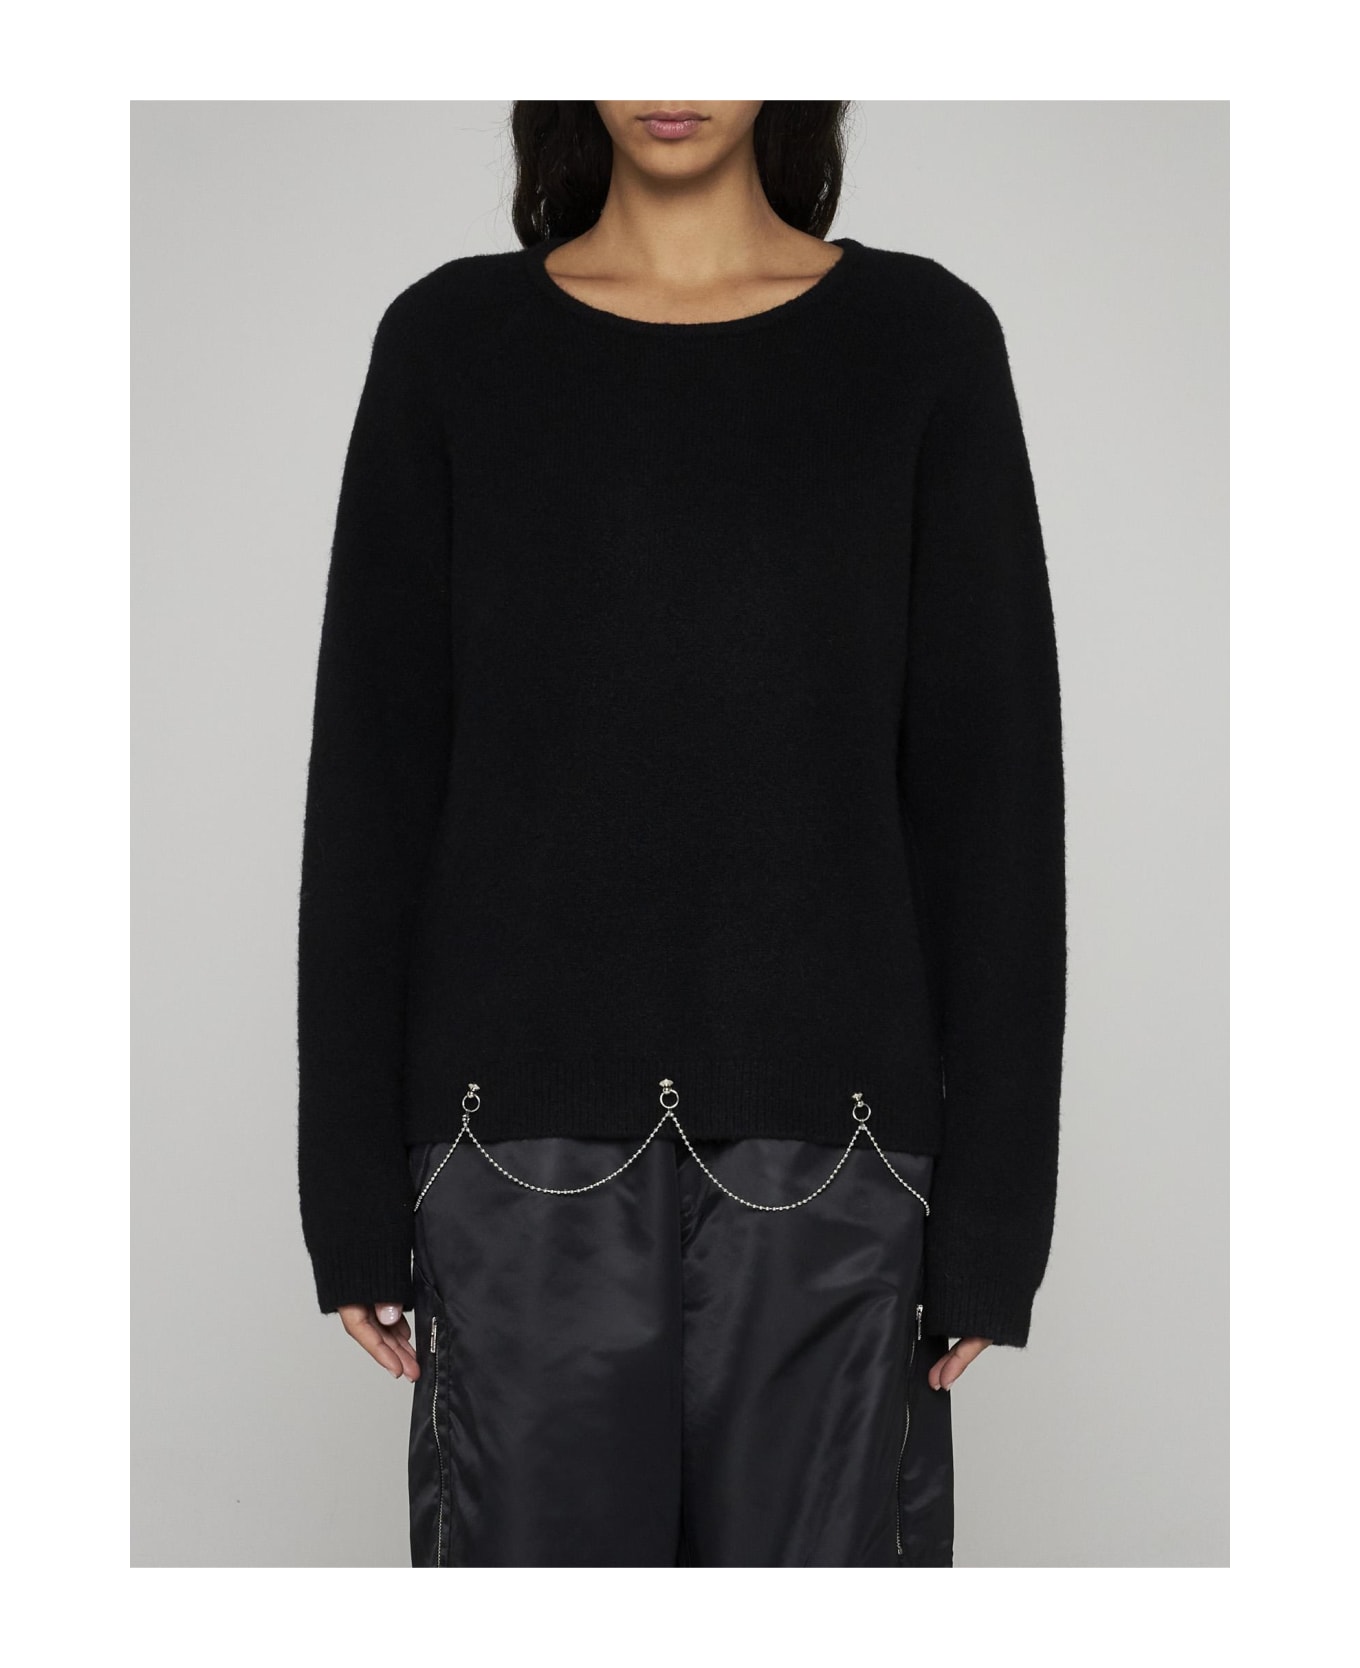 Random Identities Chain-detail Wool-blend Sweater - Black ニットウェア